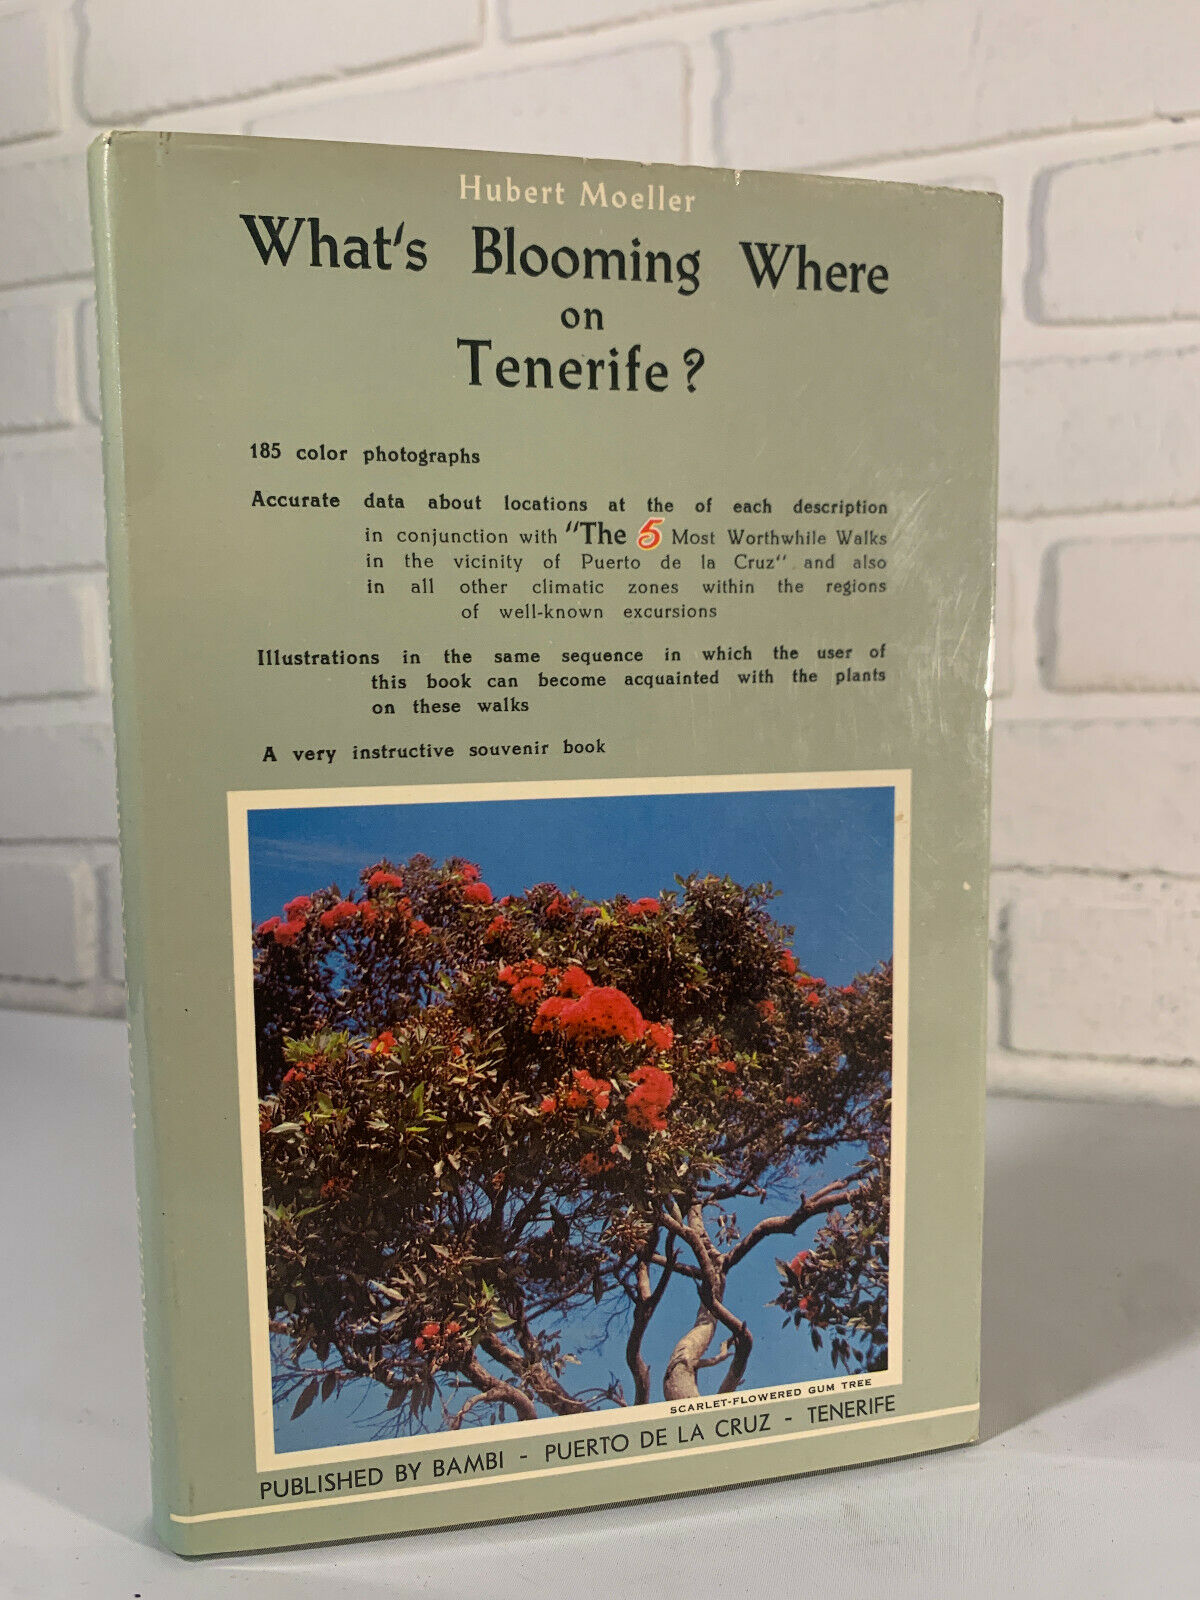 What's Blooming Where on Tenerife by Hubert Moeller 1968 (K3)